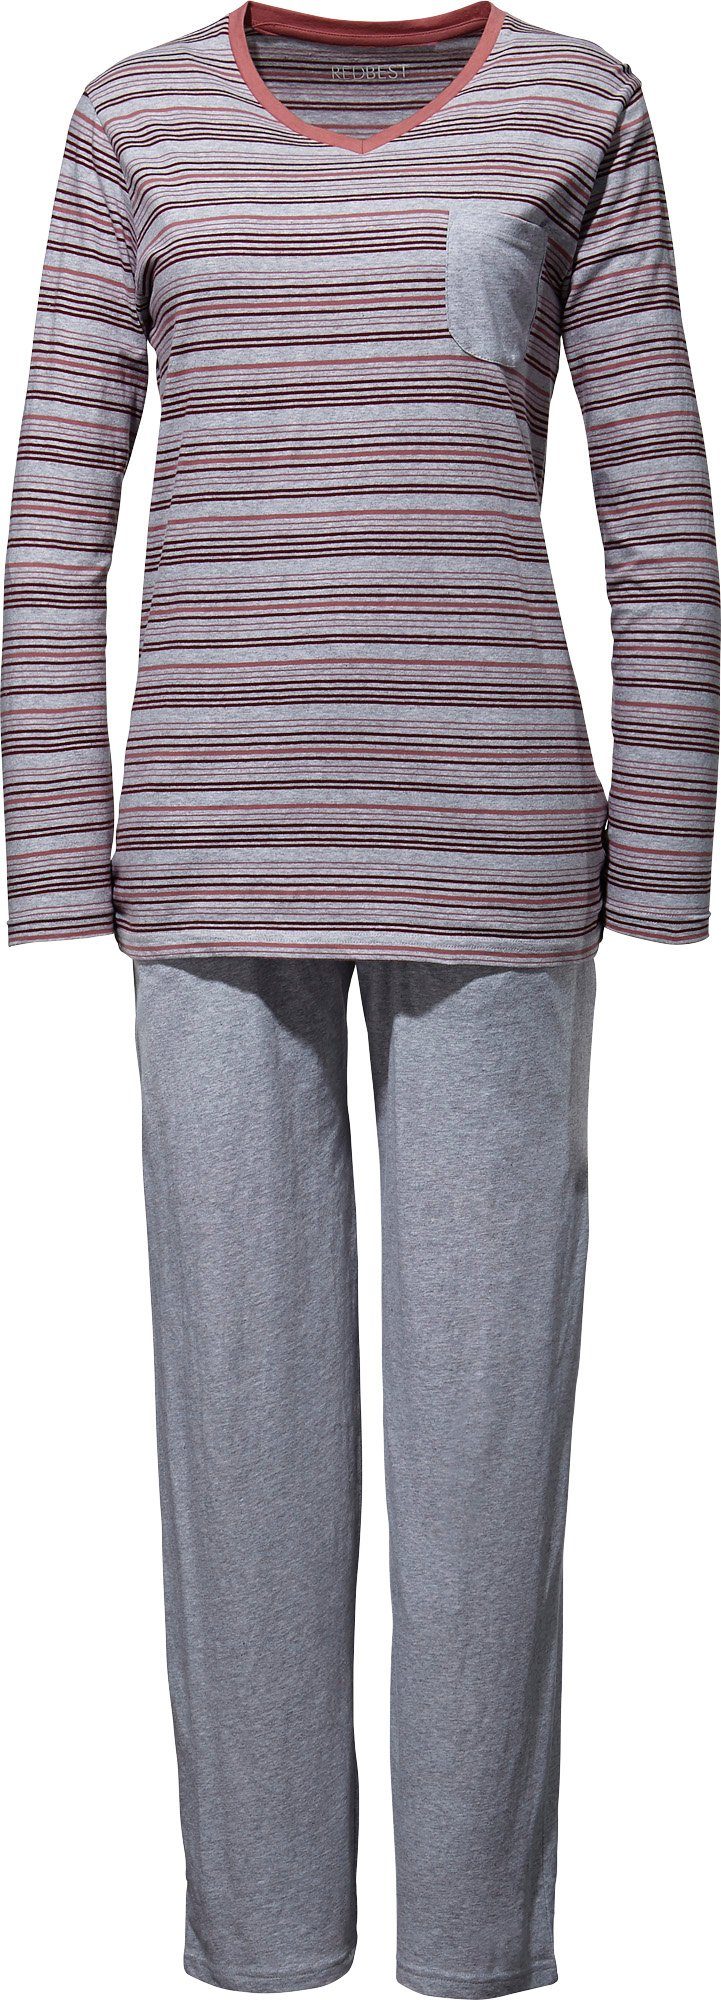 Damen-Schlafanzug Single-Jersey Streifen Pyjama REDBEST